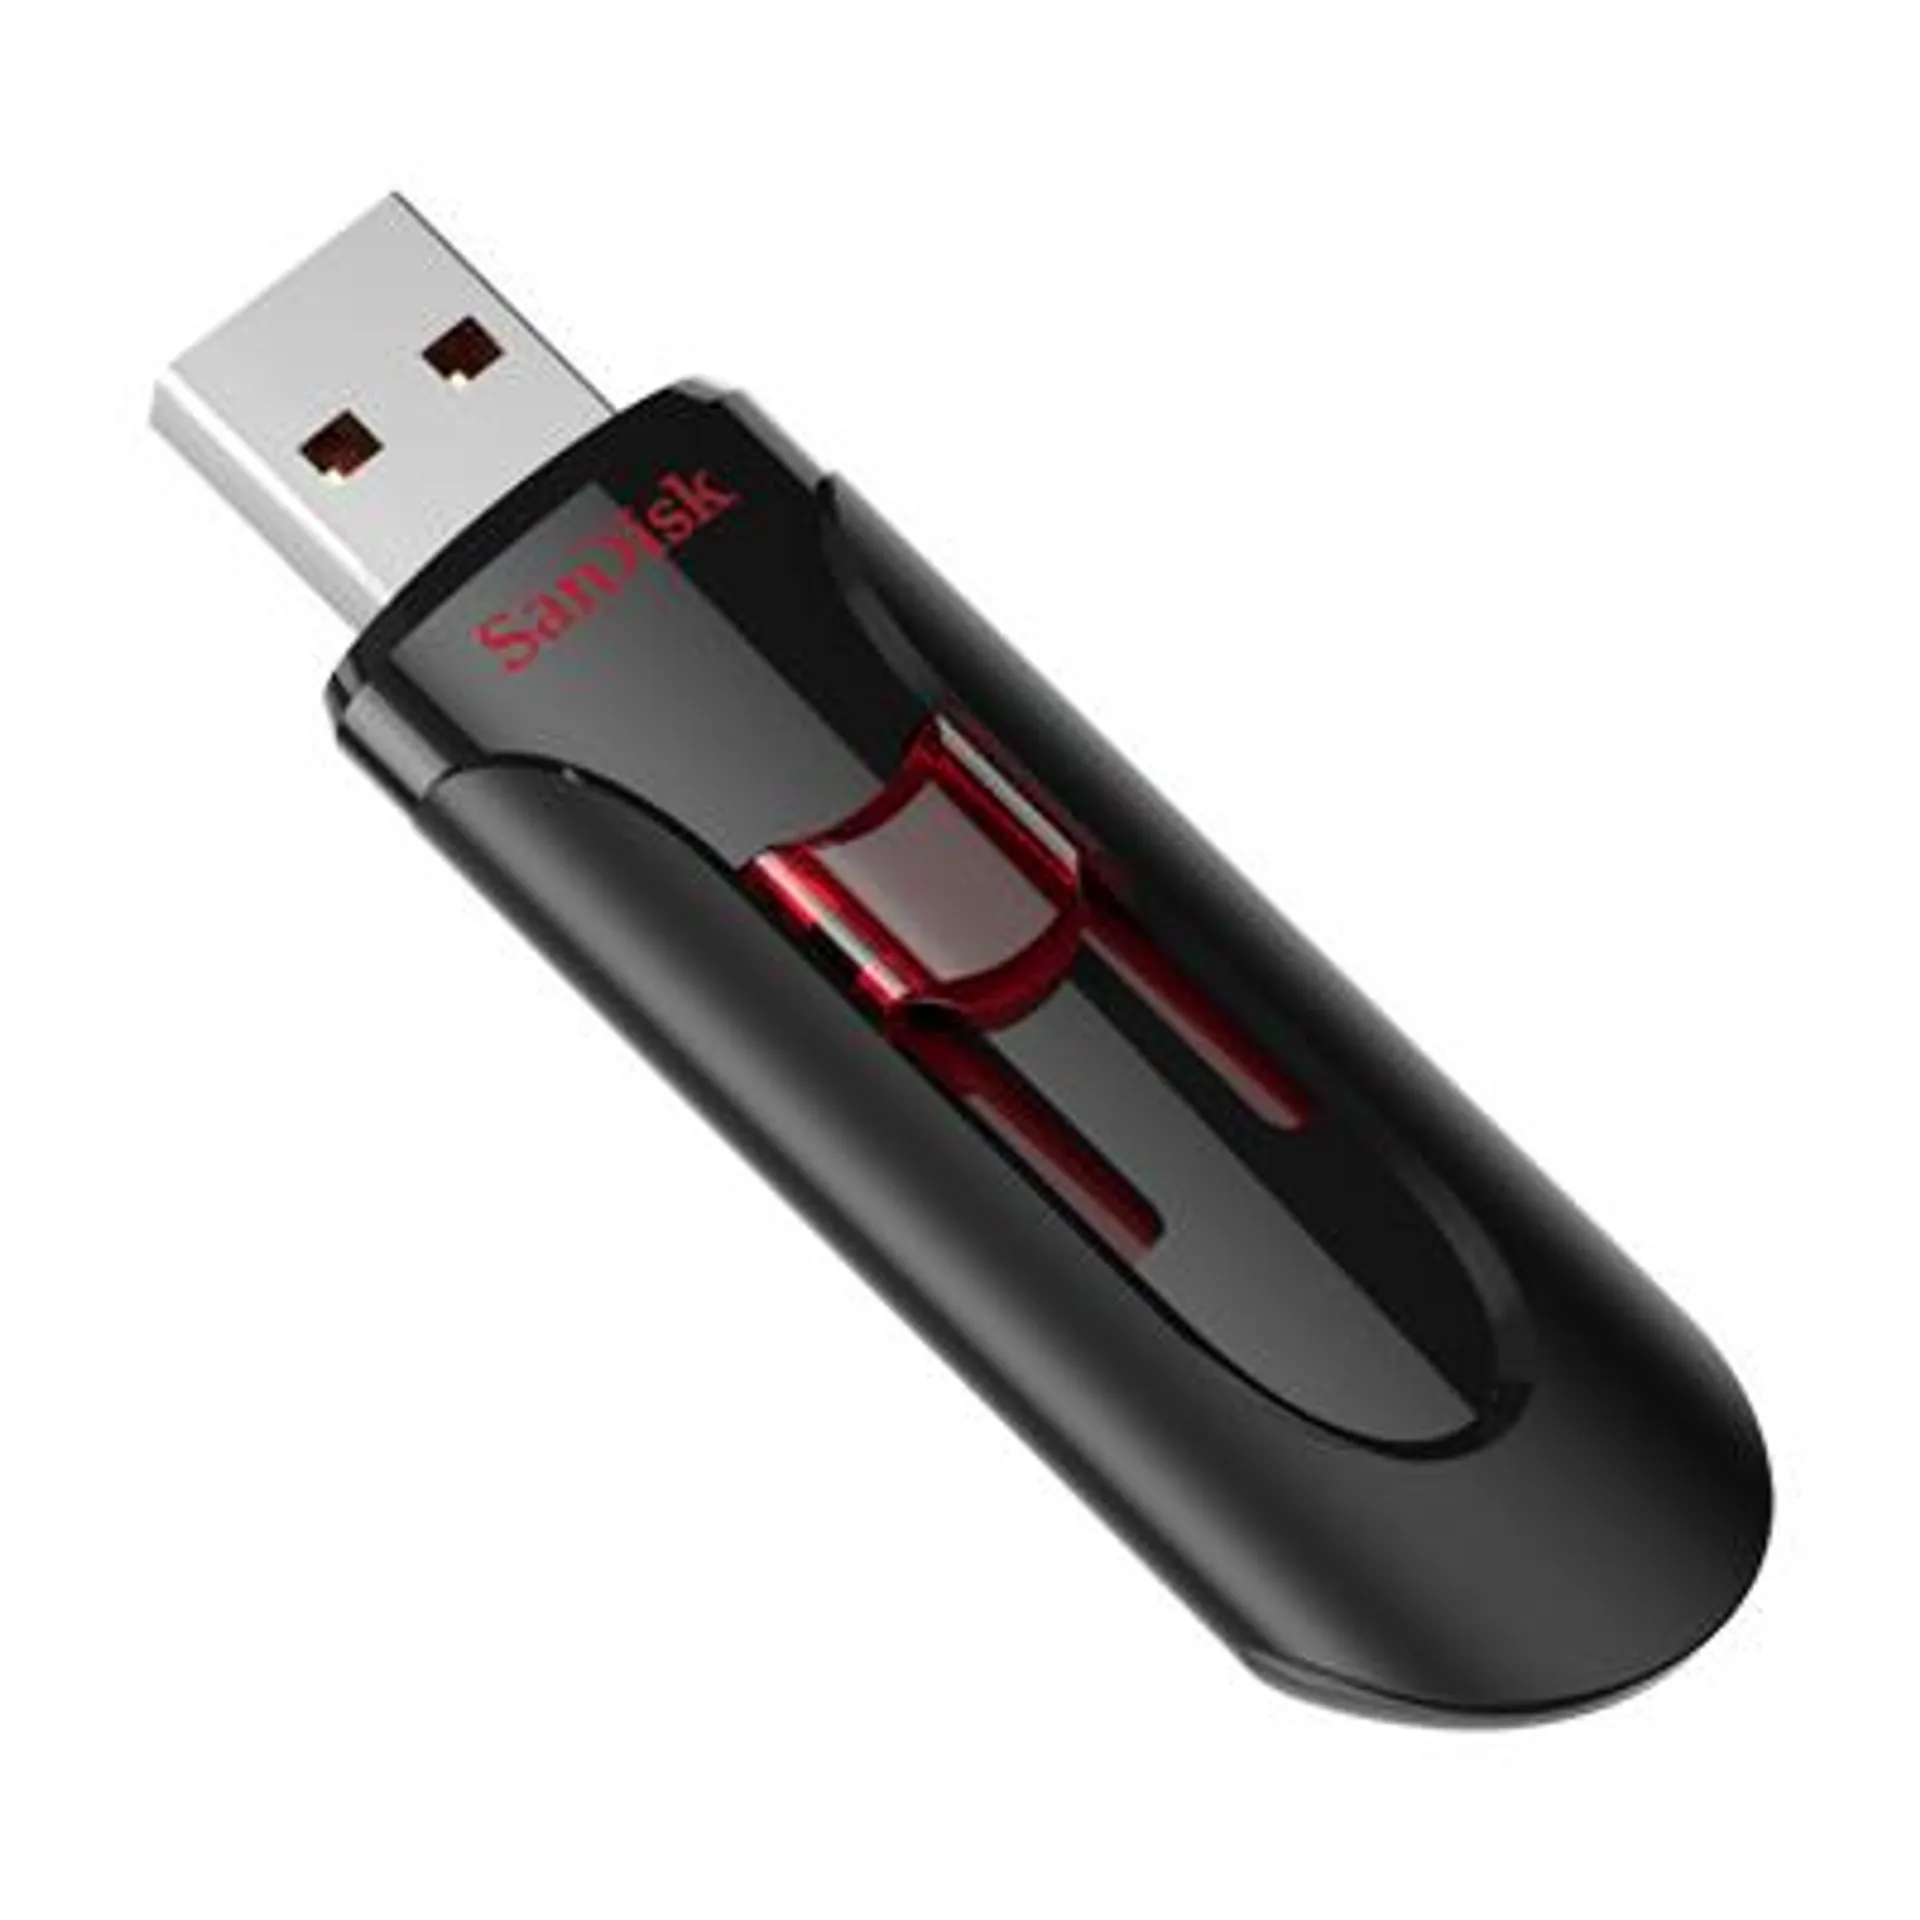 CruzerGlide 3.0 USB Flash 16GB